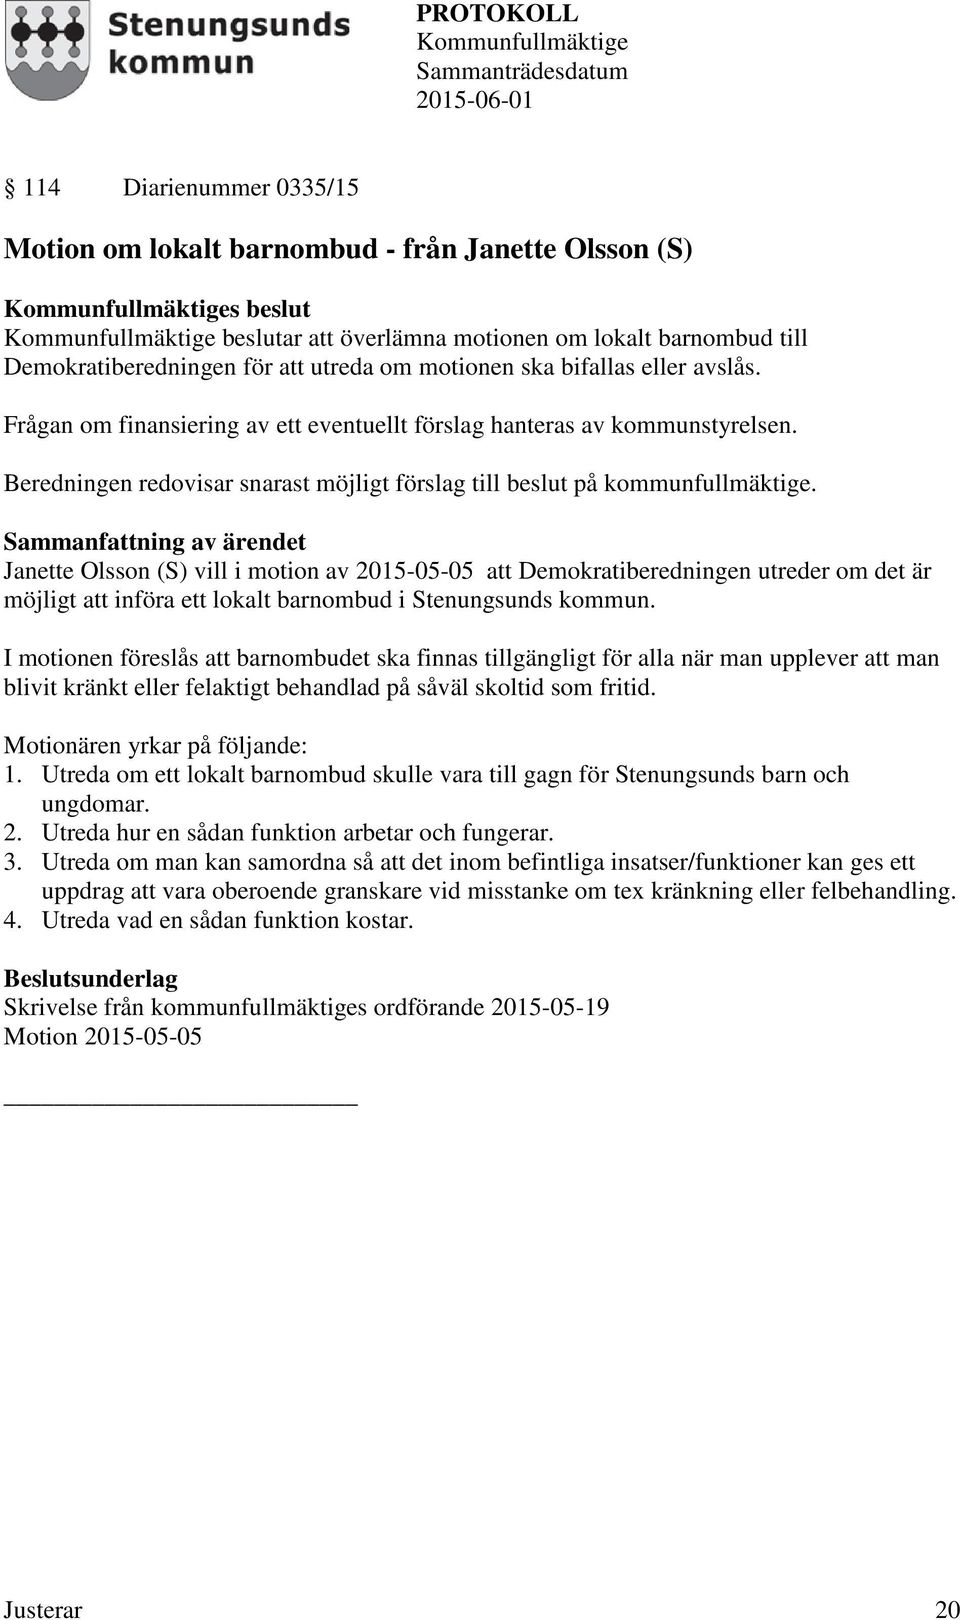 Janette Olsson (S) vill i motion av 2015-05-05 att Demokratiberedningen utreder om det är möjligt att införa ett lokalt barnombud i Stenungsunds kommun.